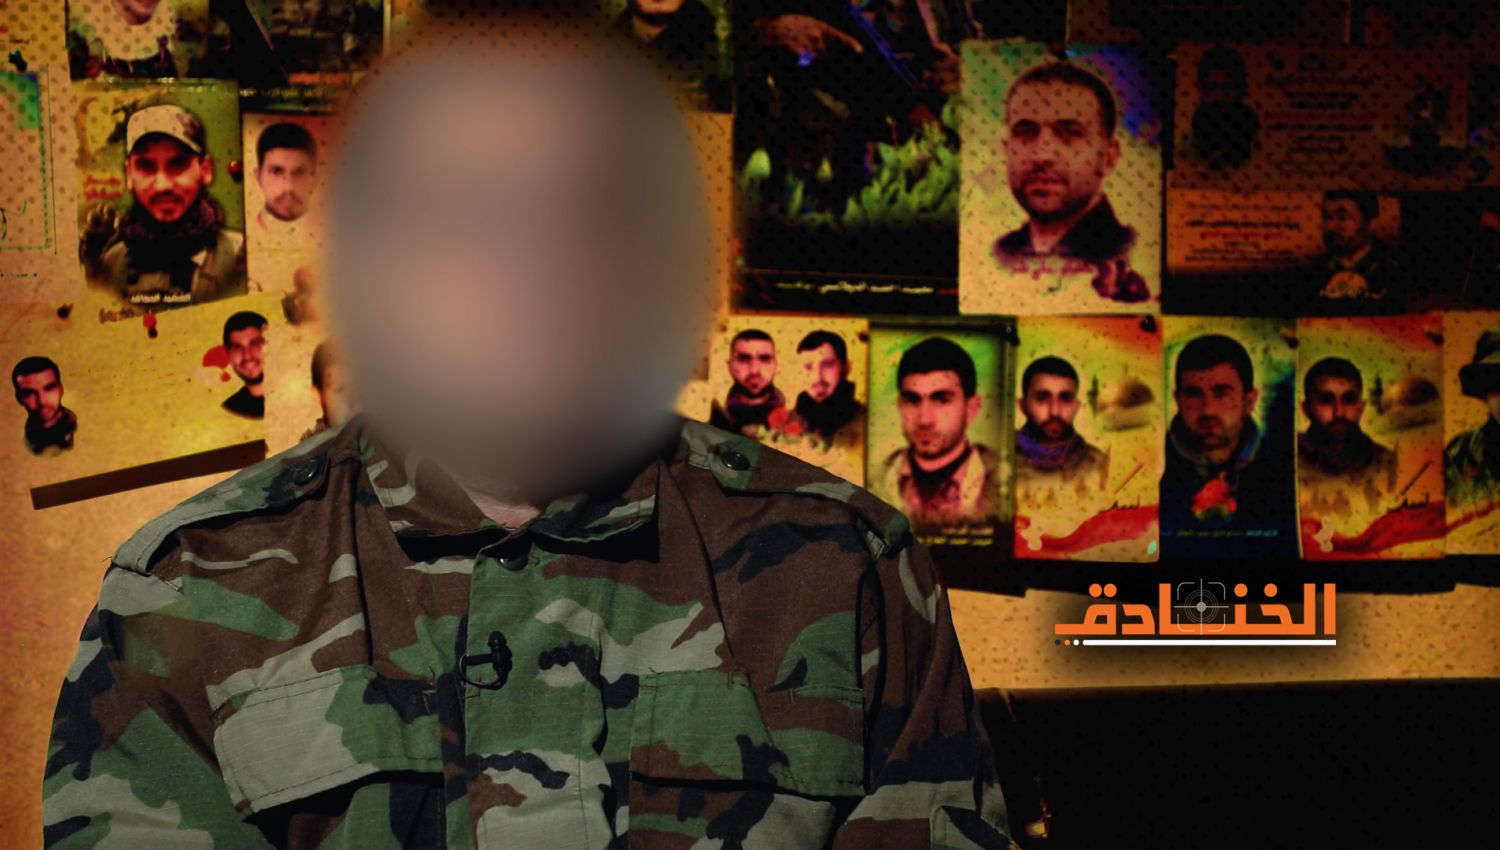 ضابط في المقاومة الإسلامية للخنادق: إذا تجرأت "إسرائيل" على العدوان فستكون نهايتها